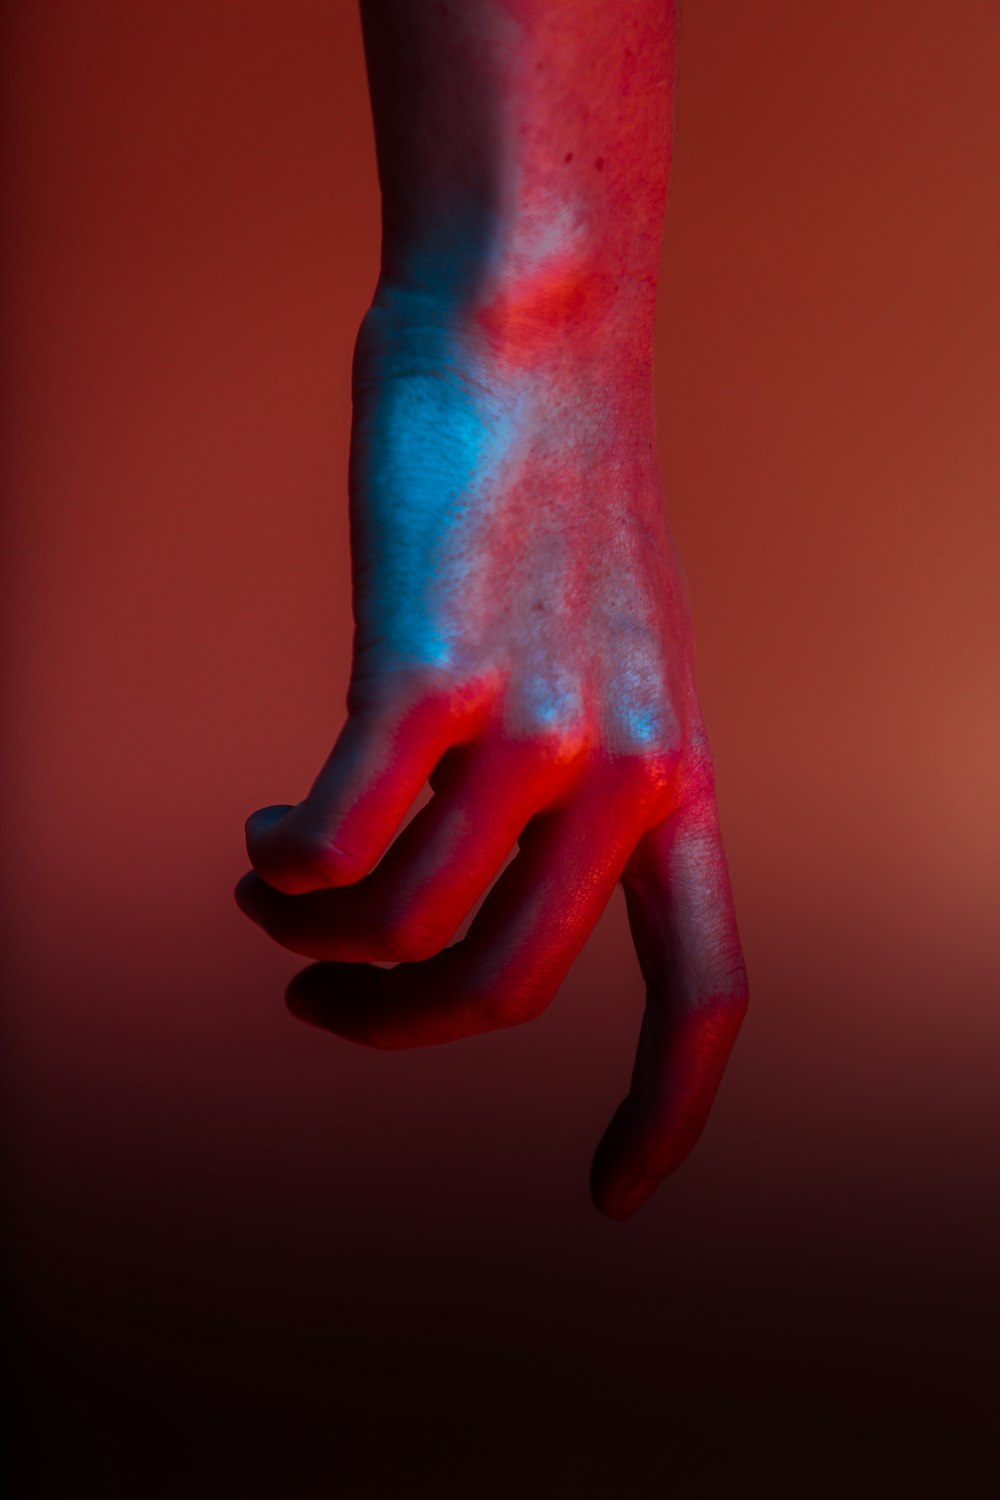 fotografia a fuoco superficiale della mano con vernice rossa